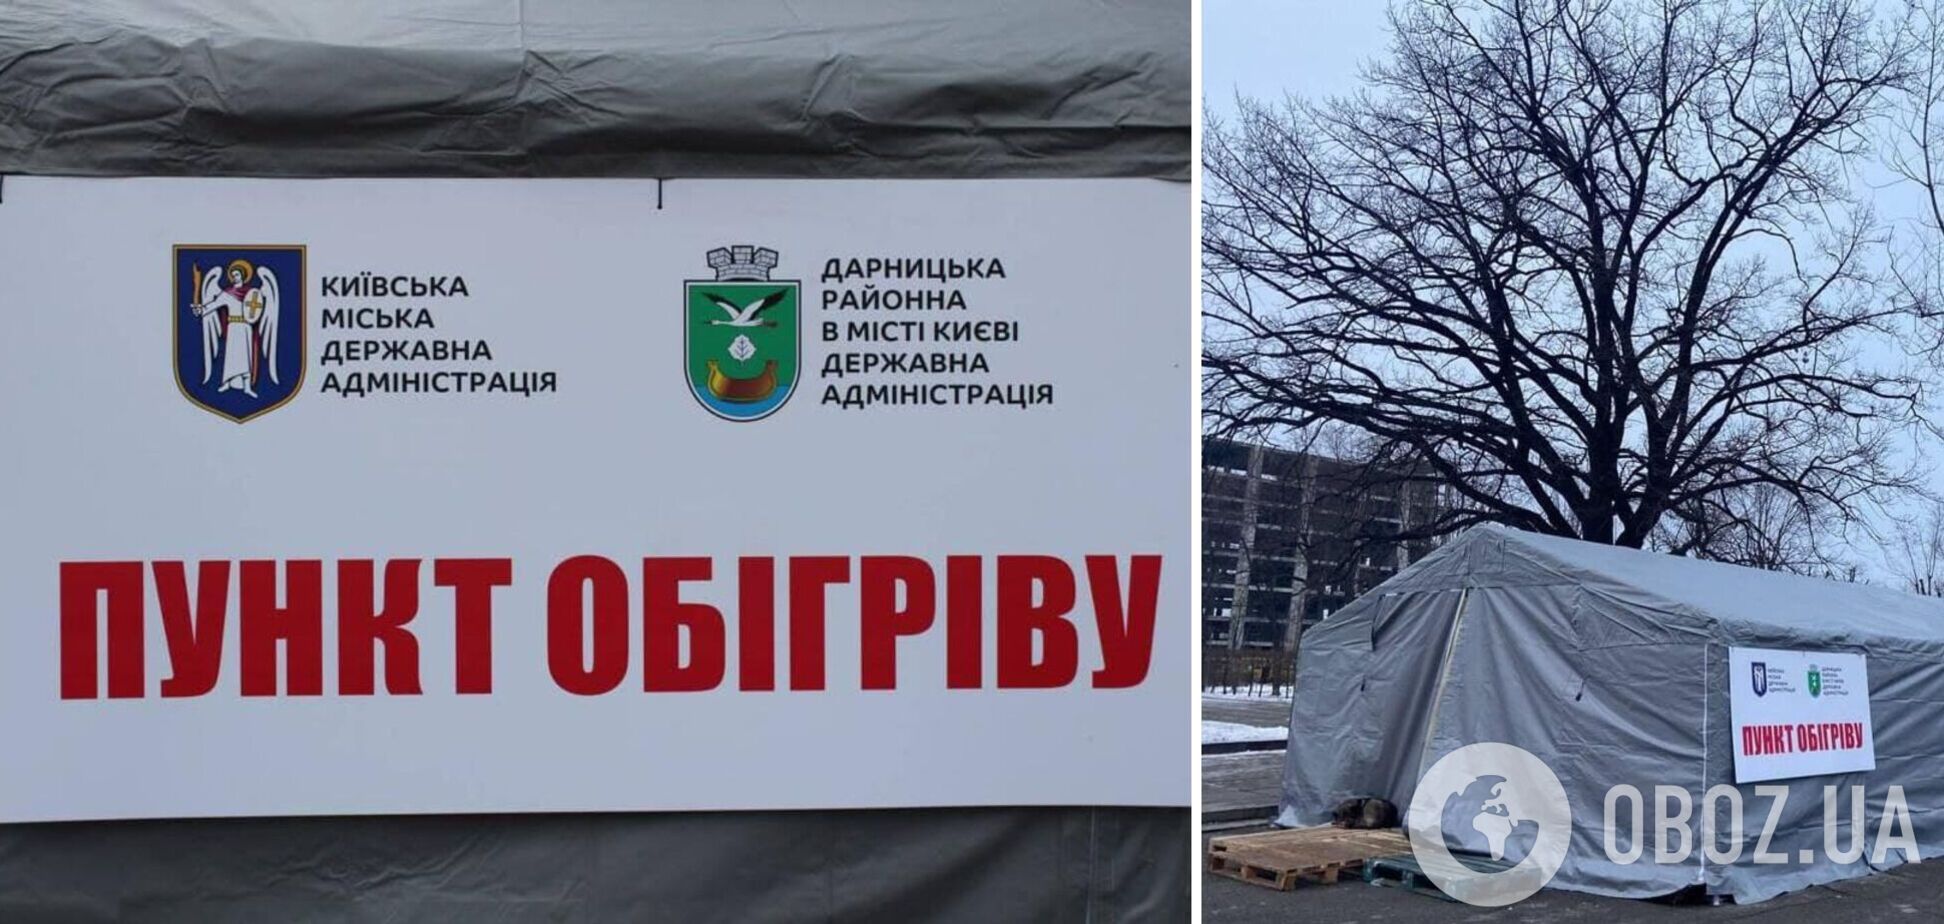 В Киеве начали работать пункты обогрева